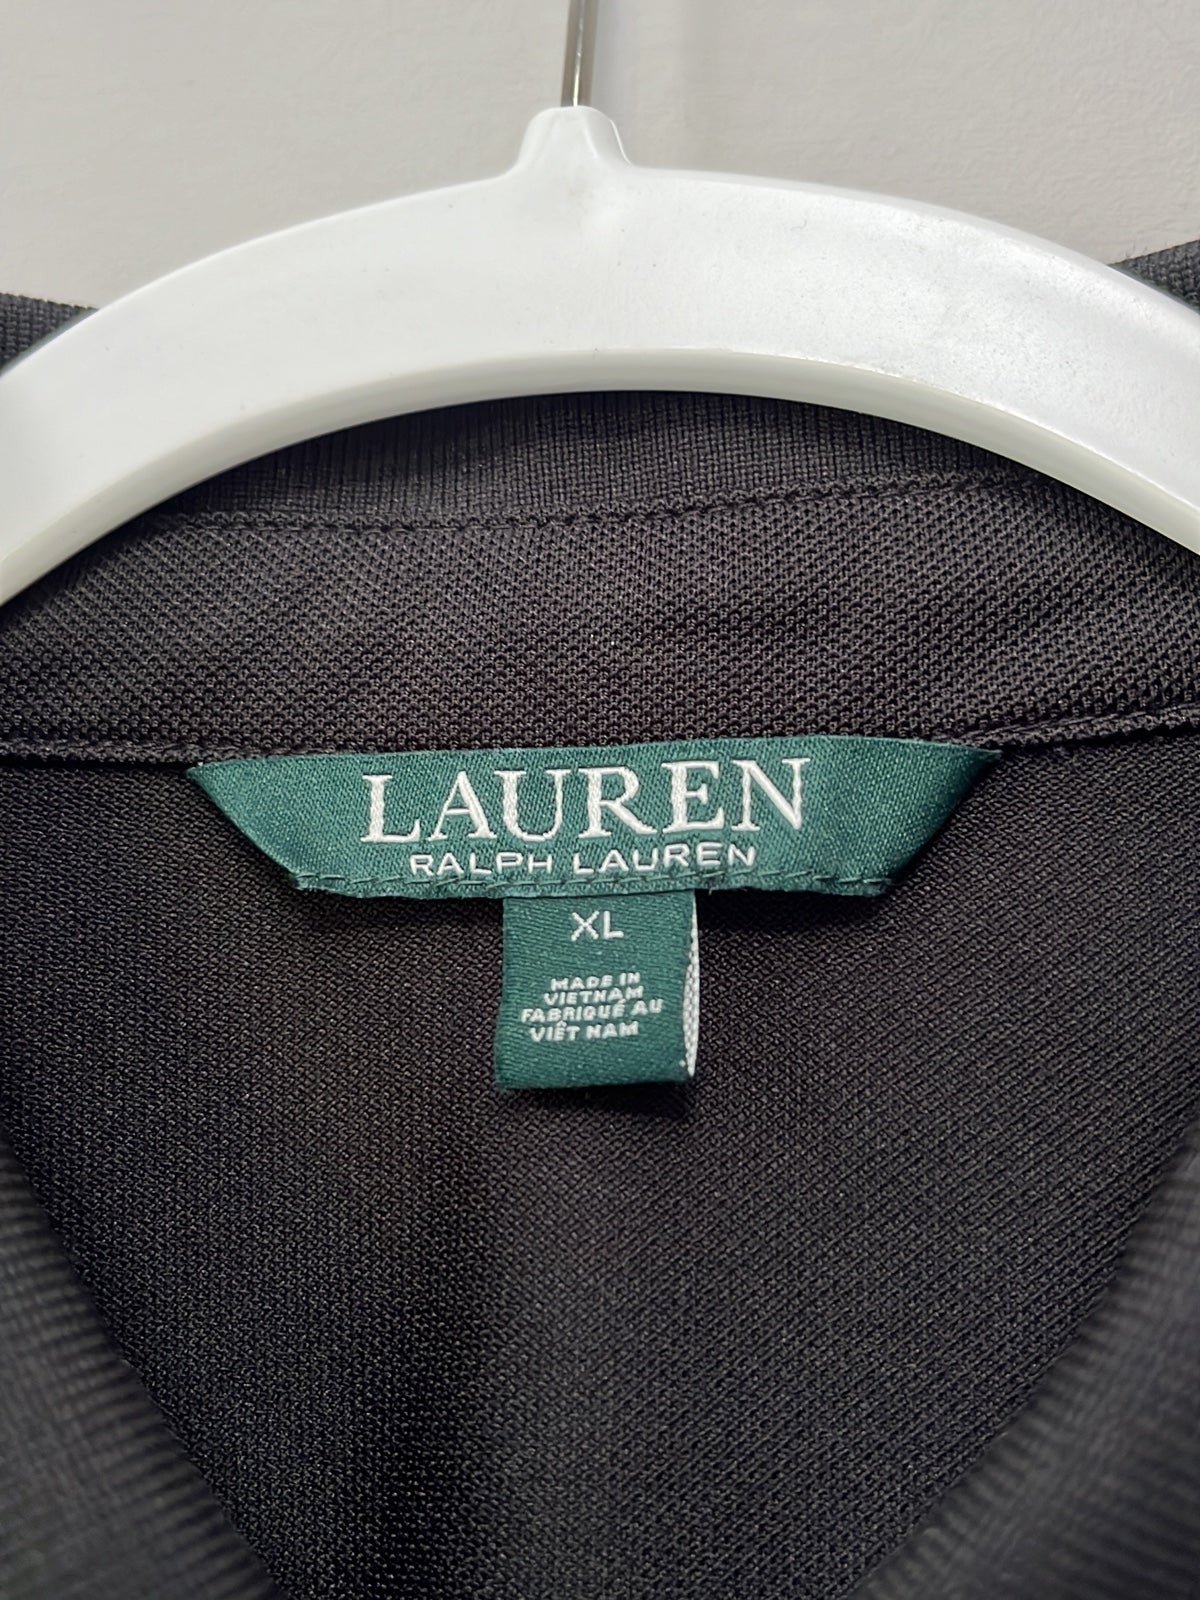 Gorgeous Ralph Lauren Pique Polo XL NWOT oN8S2aJXs outlet online shop